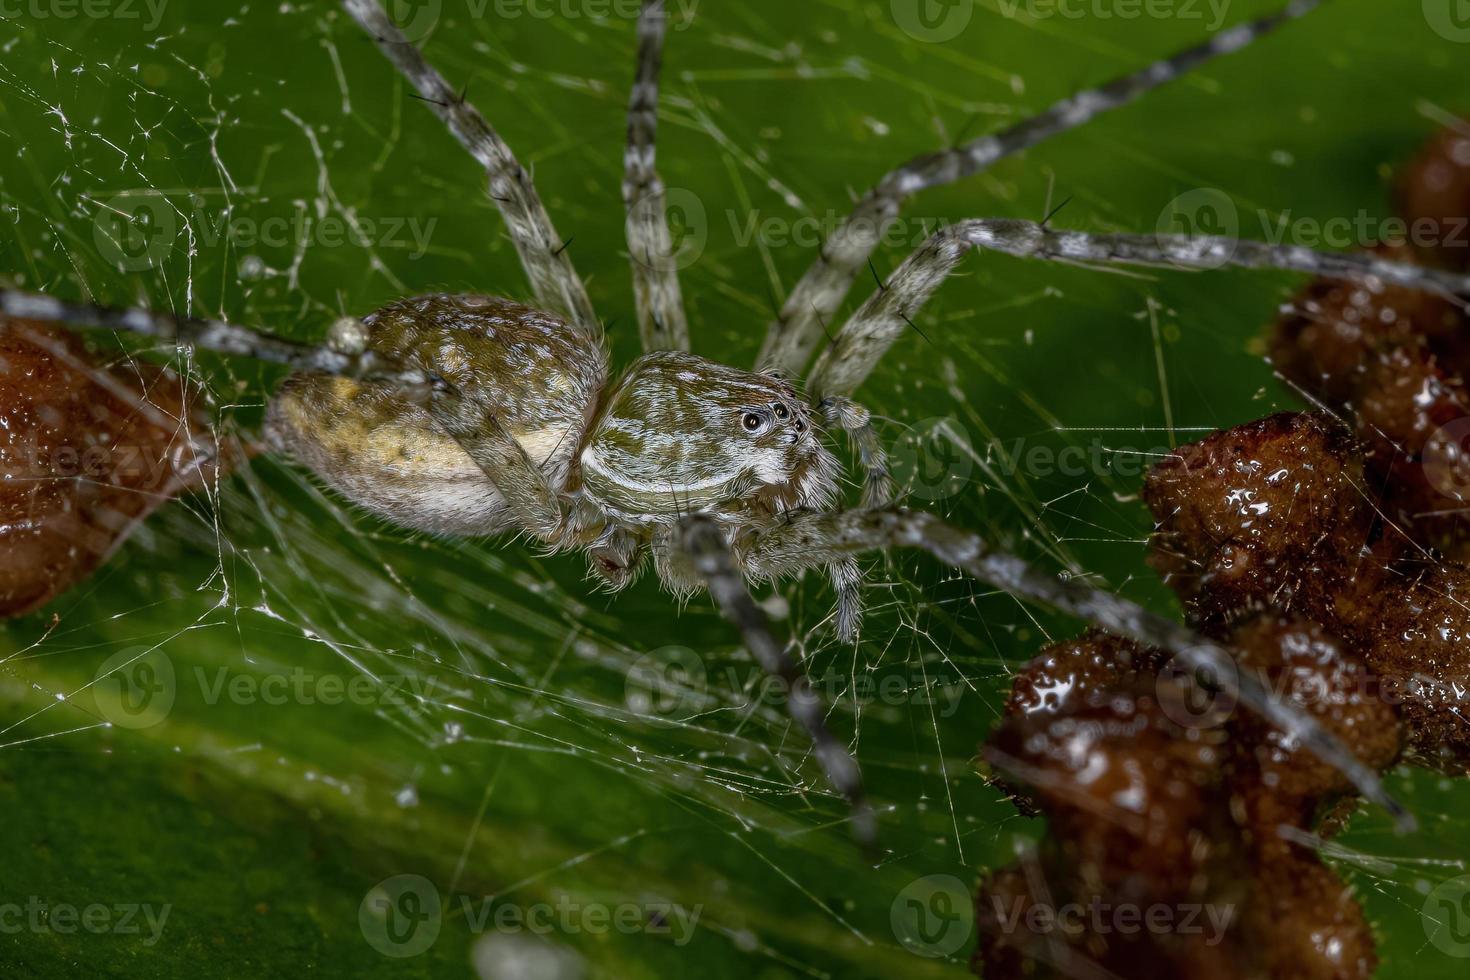 Spider web pépinière femelle adulte photo